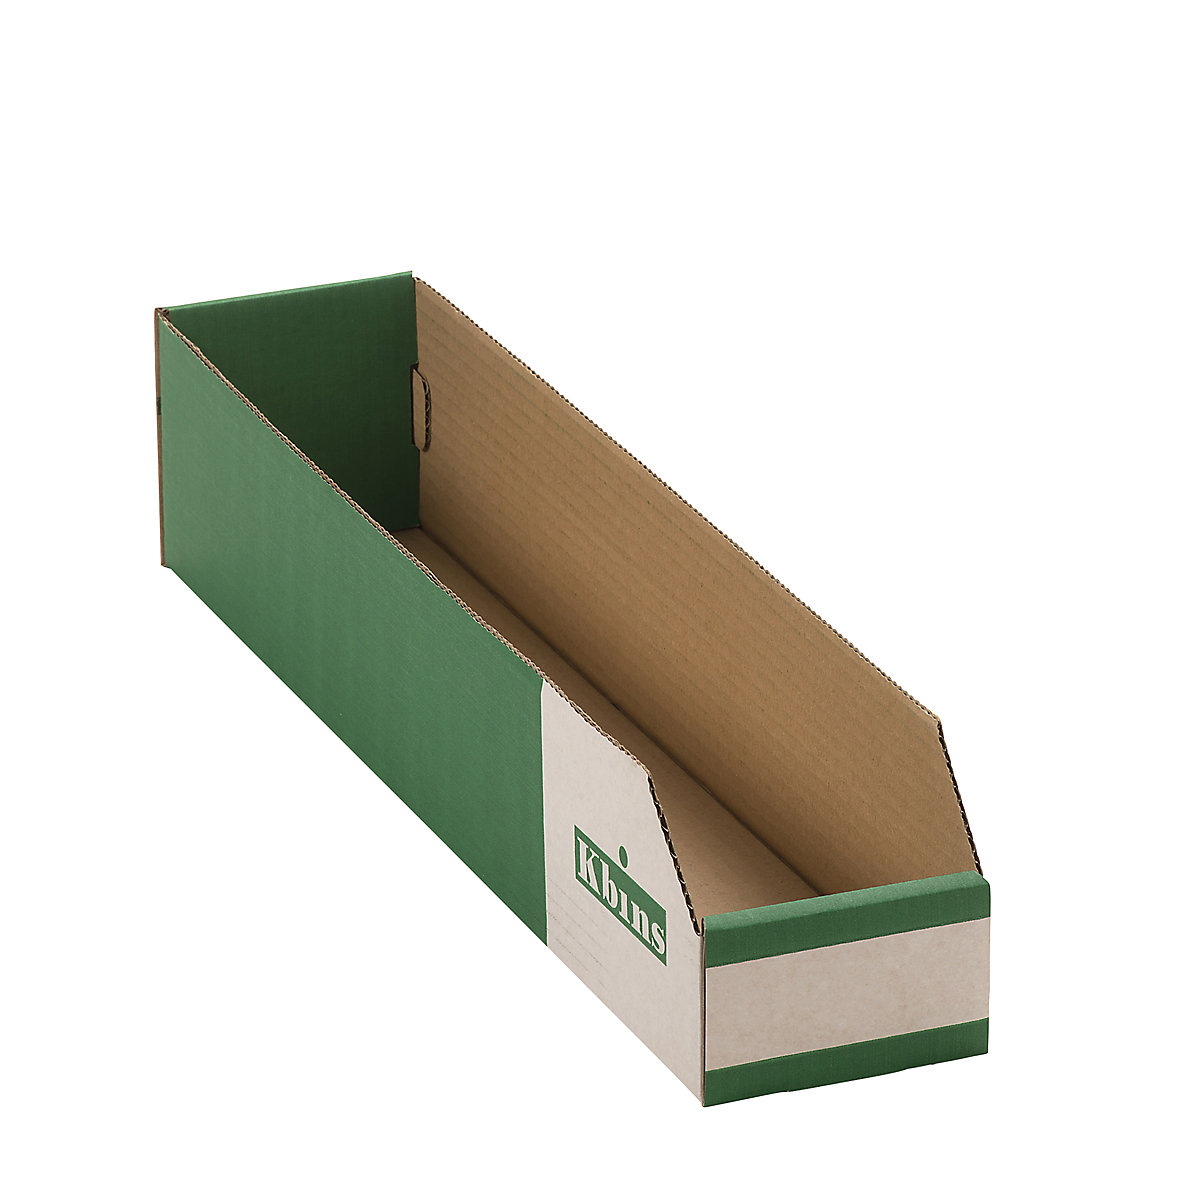 Karton állványdoboz, egyrétegű és összehajtható kivitel, cs. e. 50 db, h x szé x ma 500x100x100 mm-4